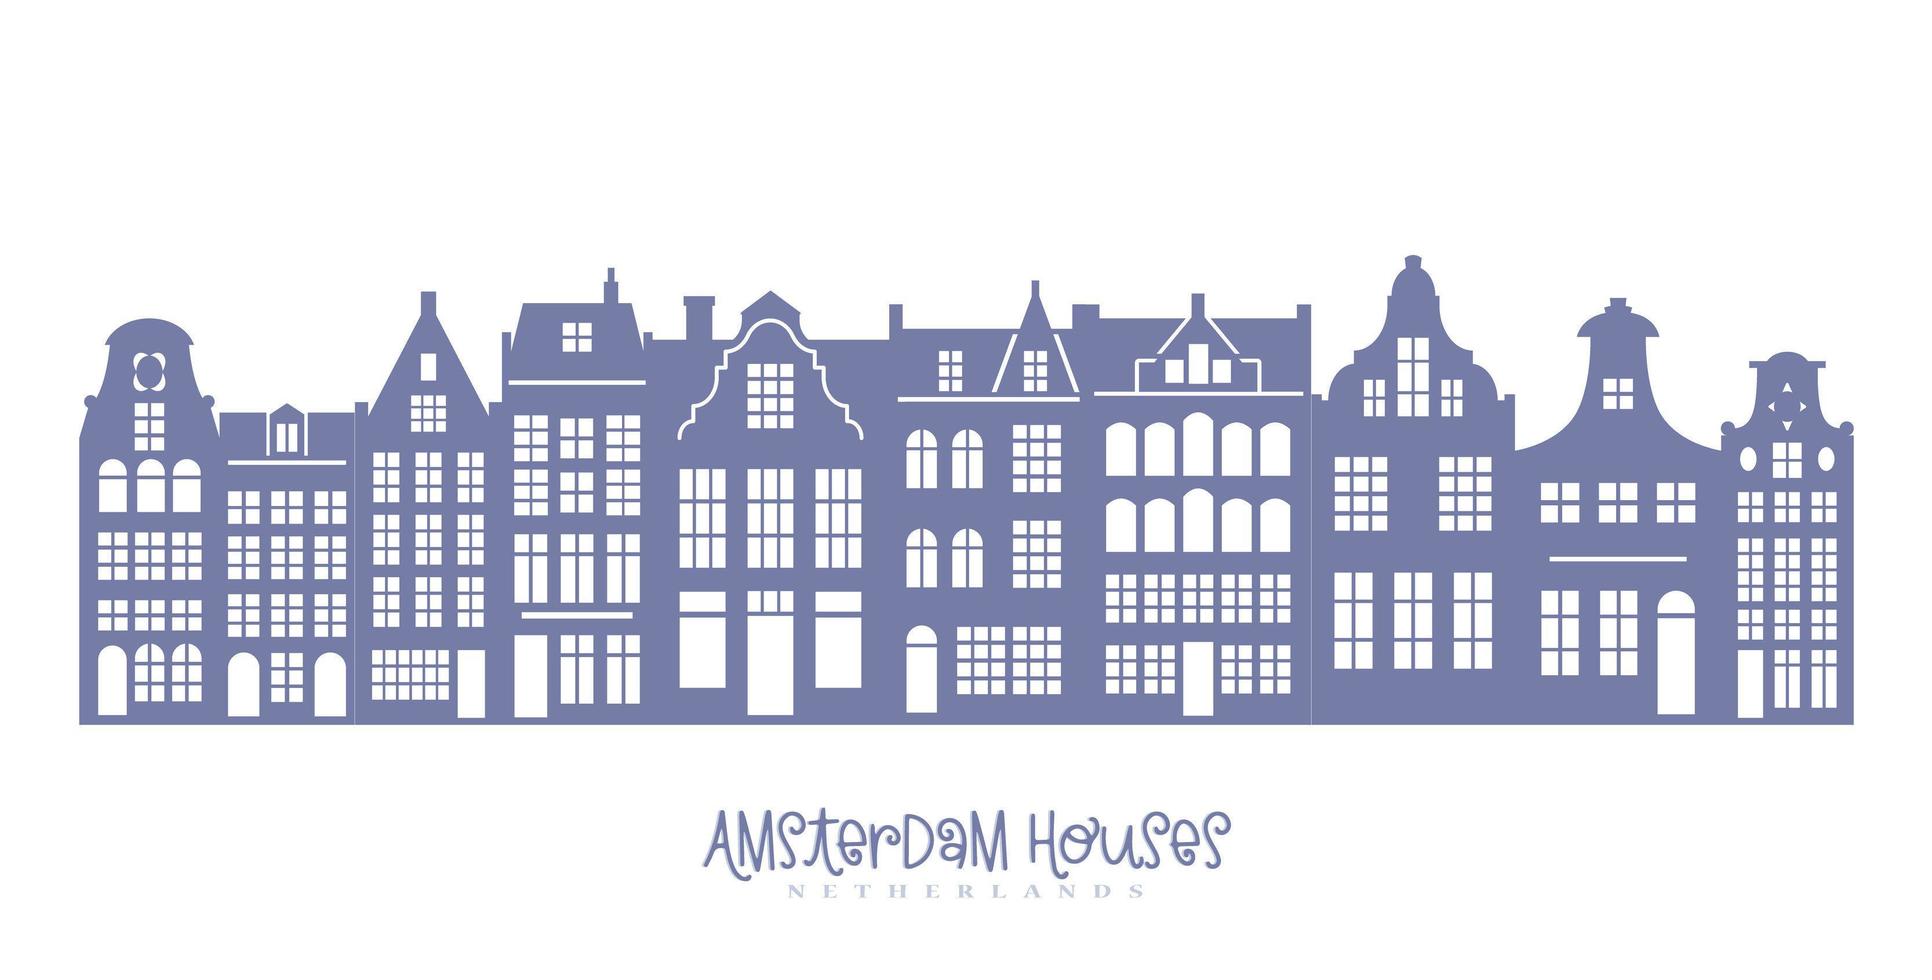 silueta de una hilera de casas de Amsterdam. fachadas de edificios antiguos europeos para decoración navideña. hogares holandeses. vector